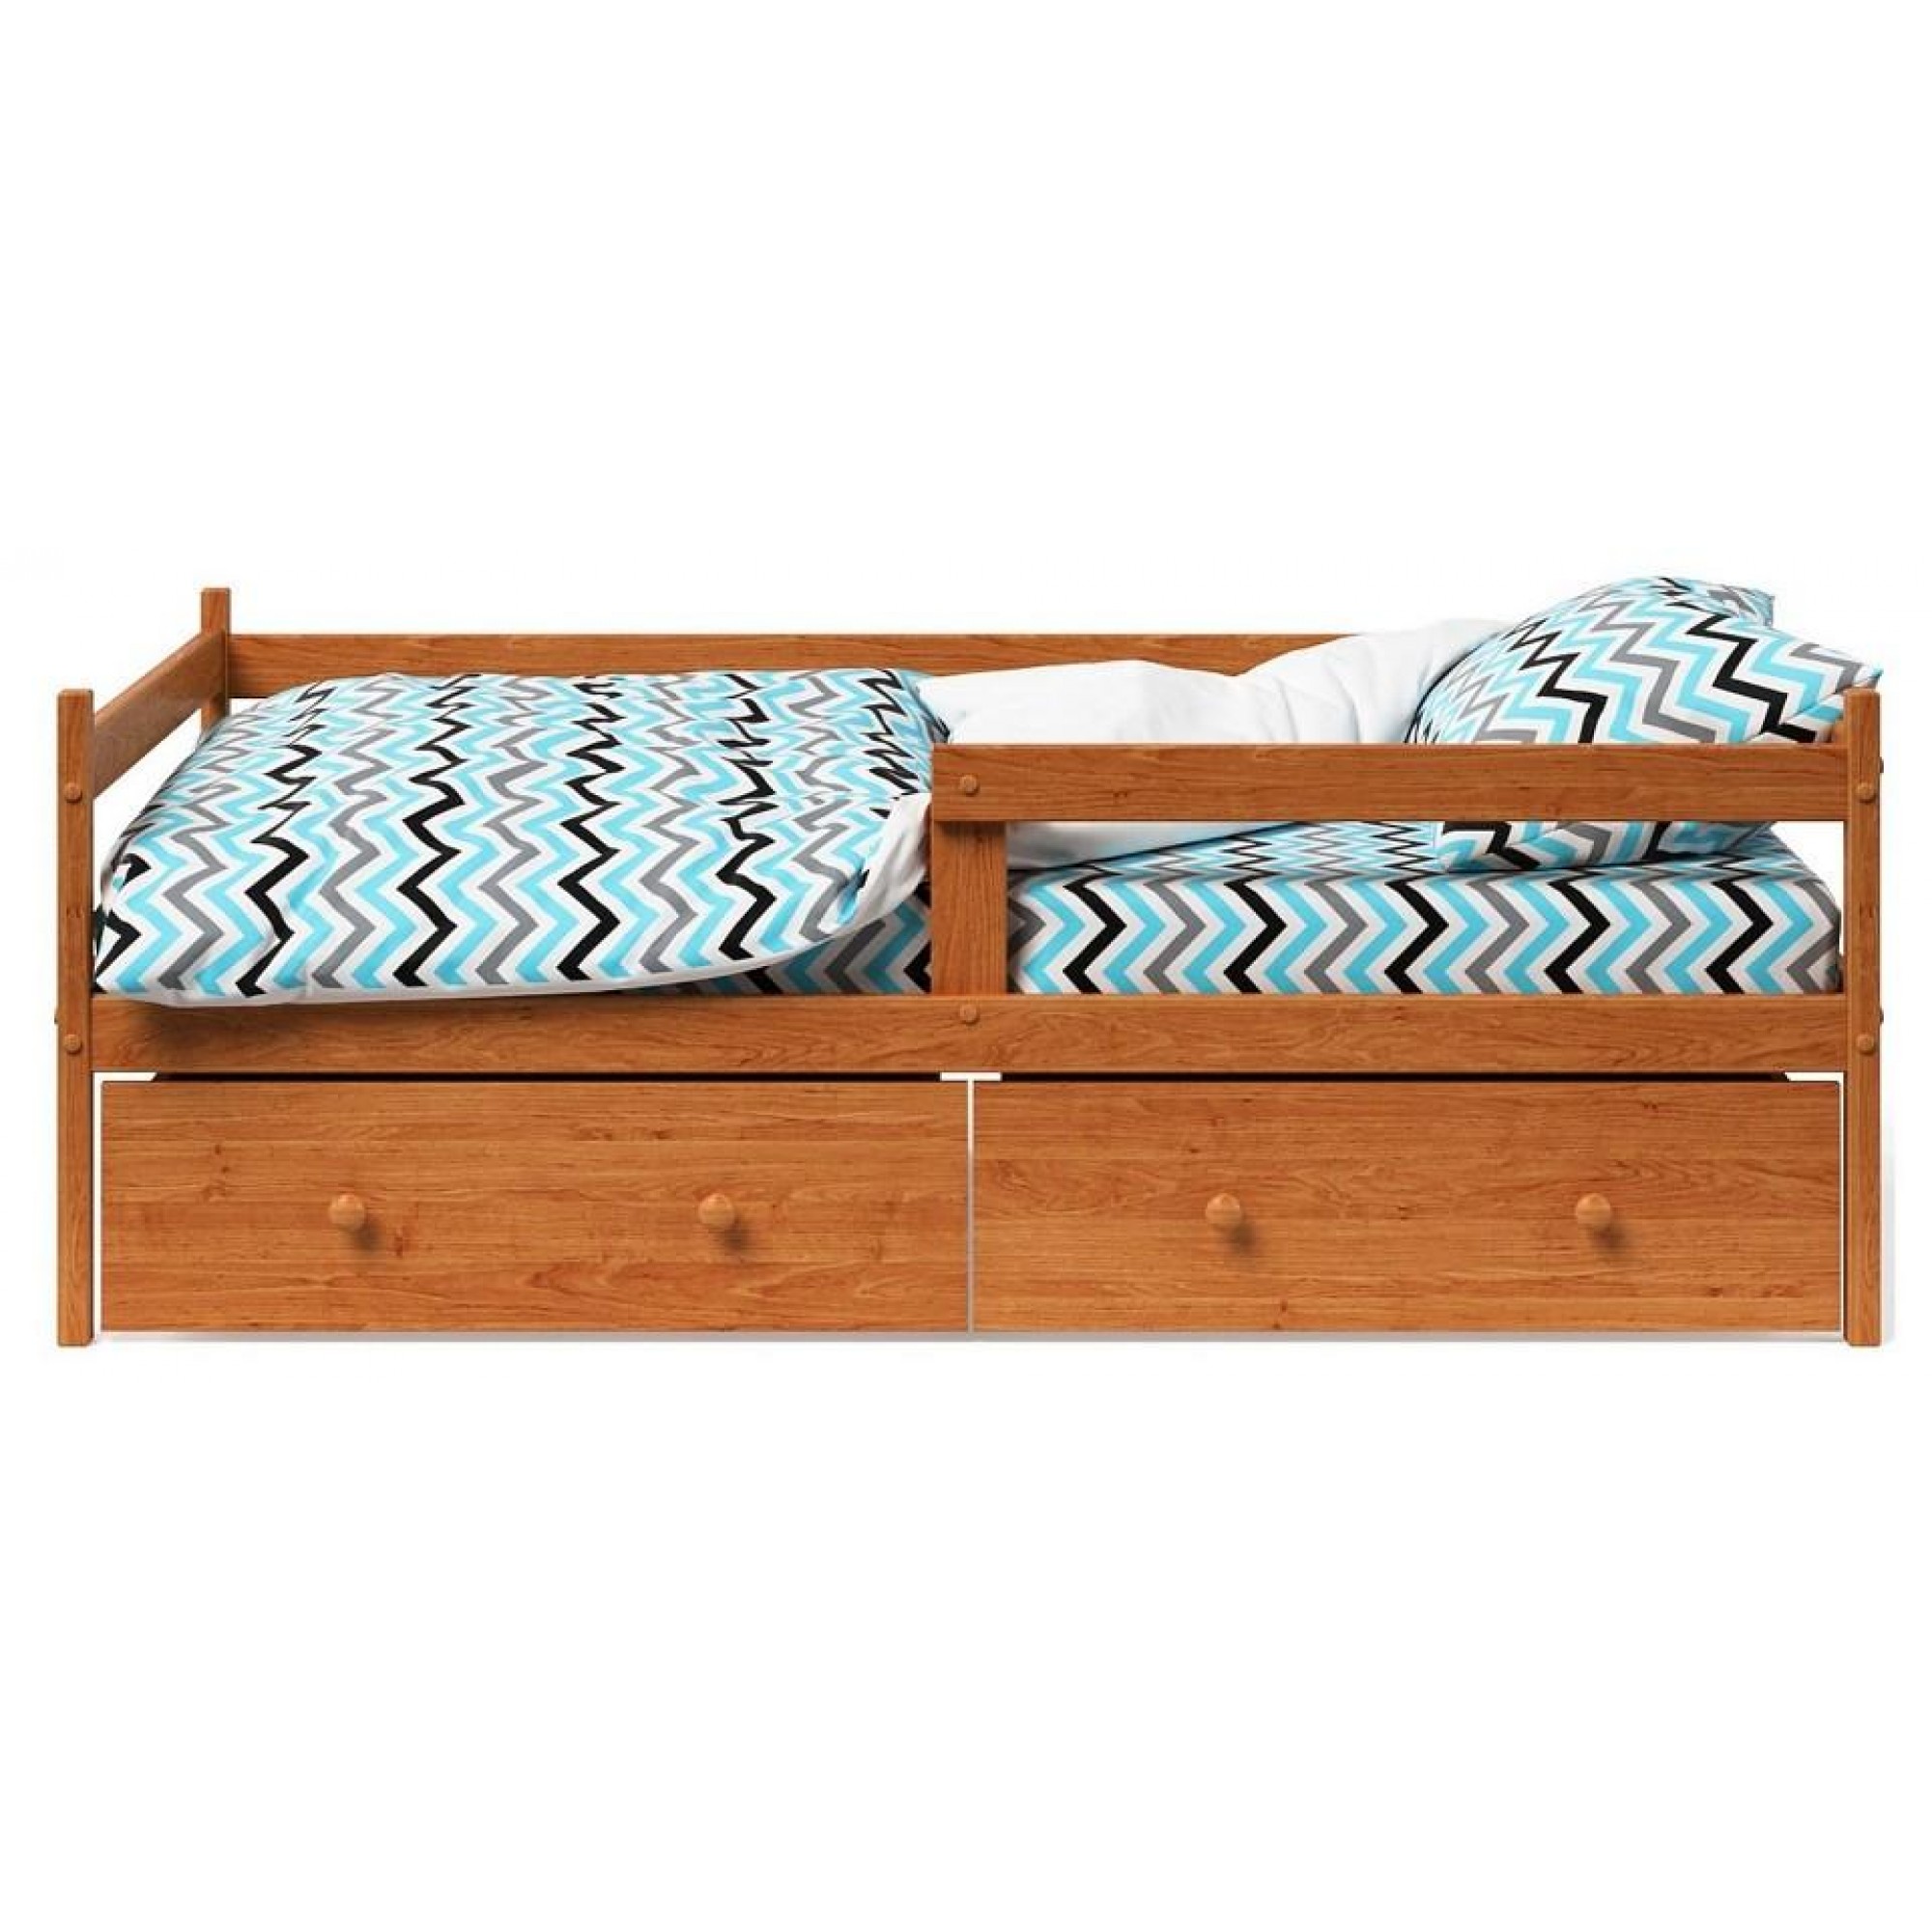 Кровать Р425 древесина коричневая нейтральная ольха 1660x870x600(MZG_404566)